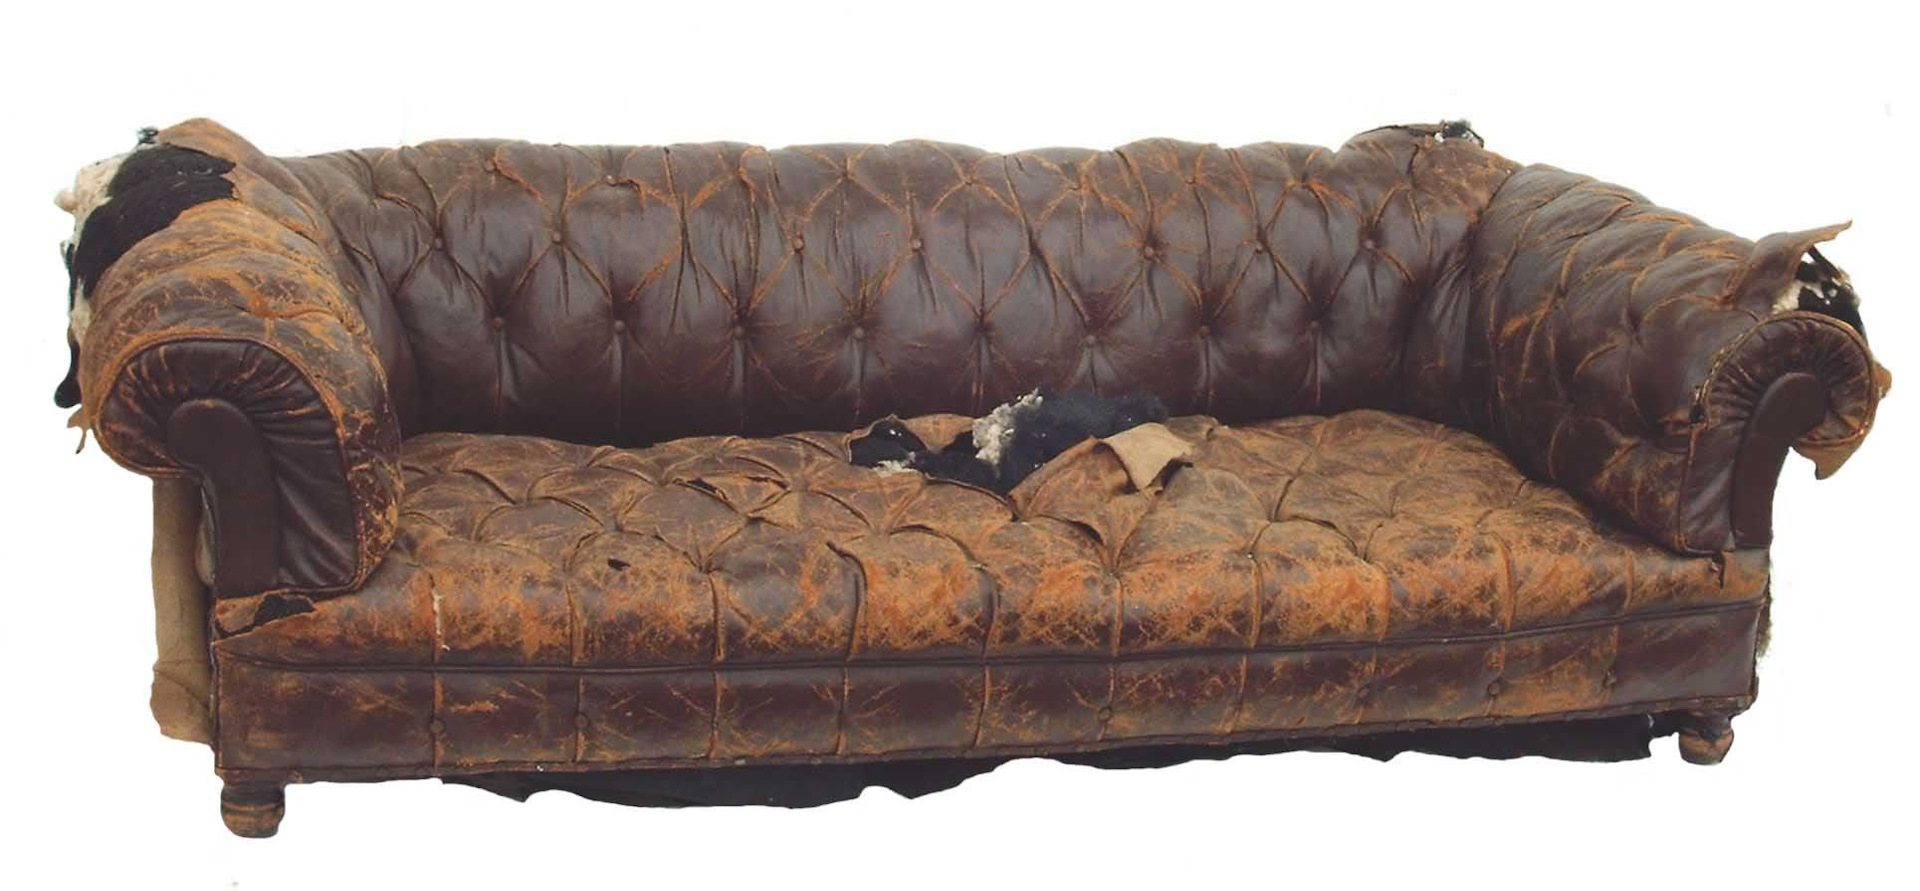 старый диван на новый с доплатой